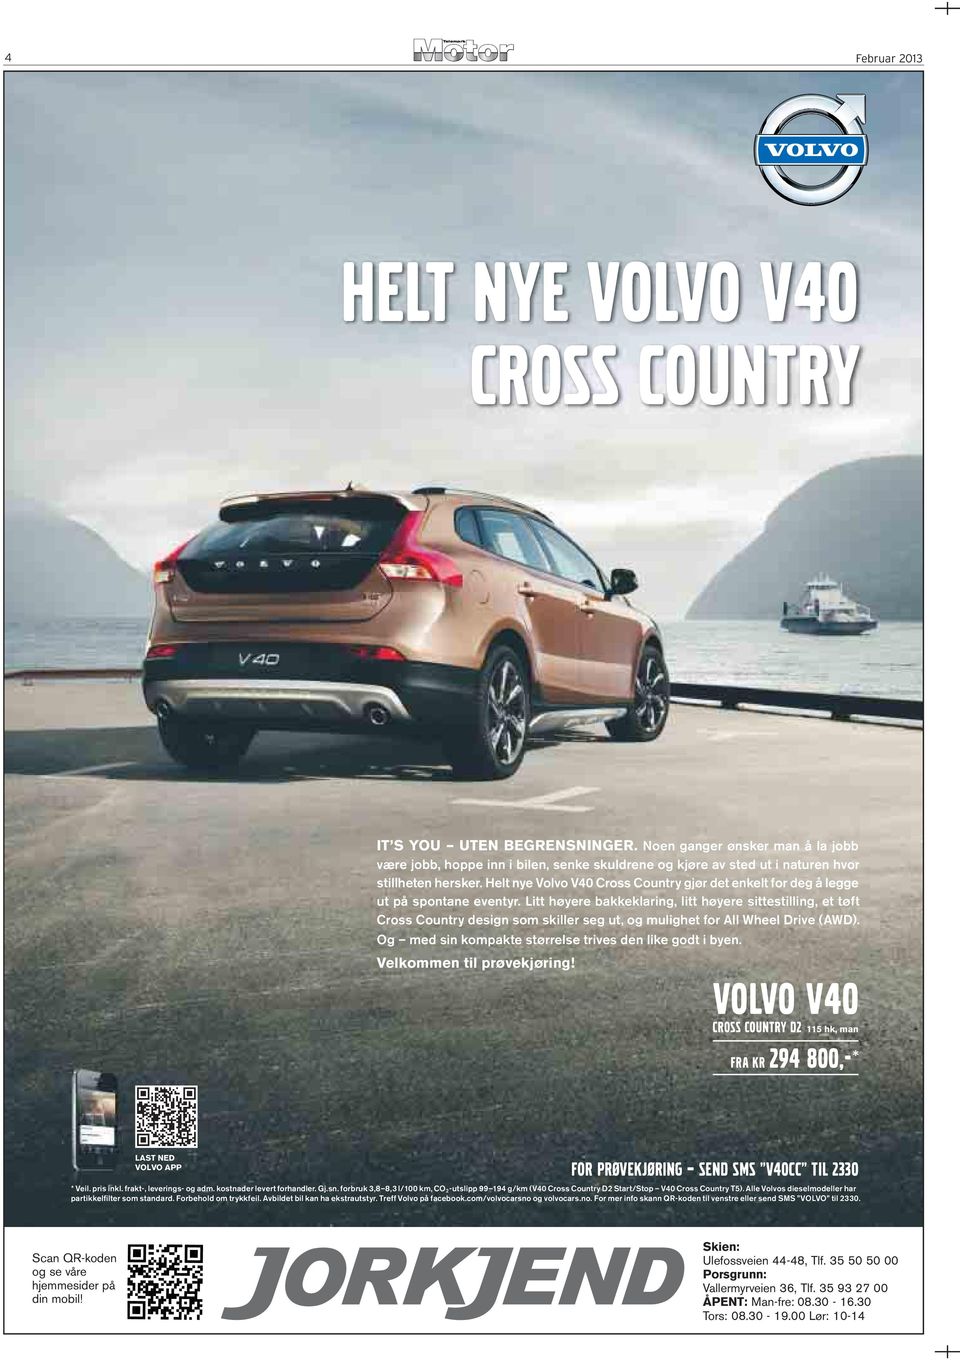 Helt nye Volvo V40 Cross Country gjør det enkelt for deg å legge ut på spontane eventyr.